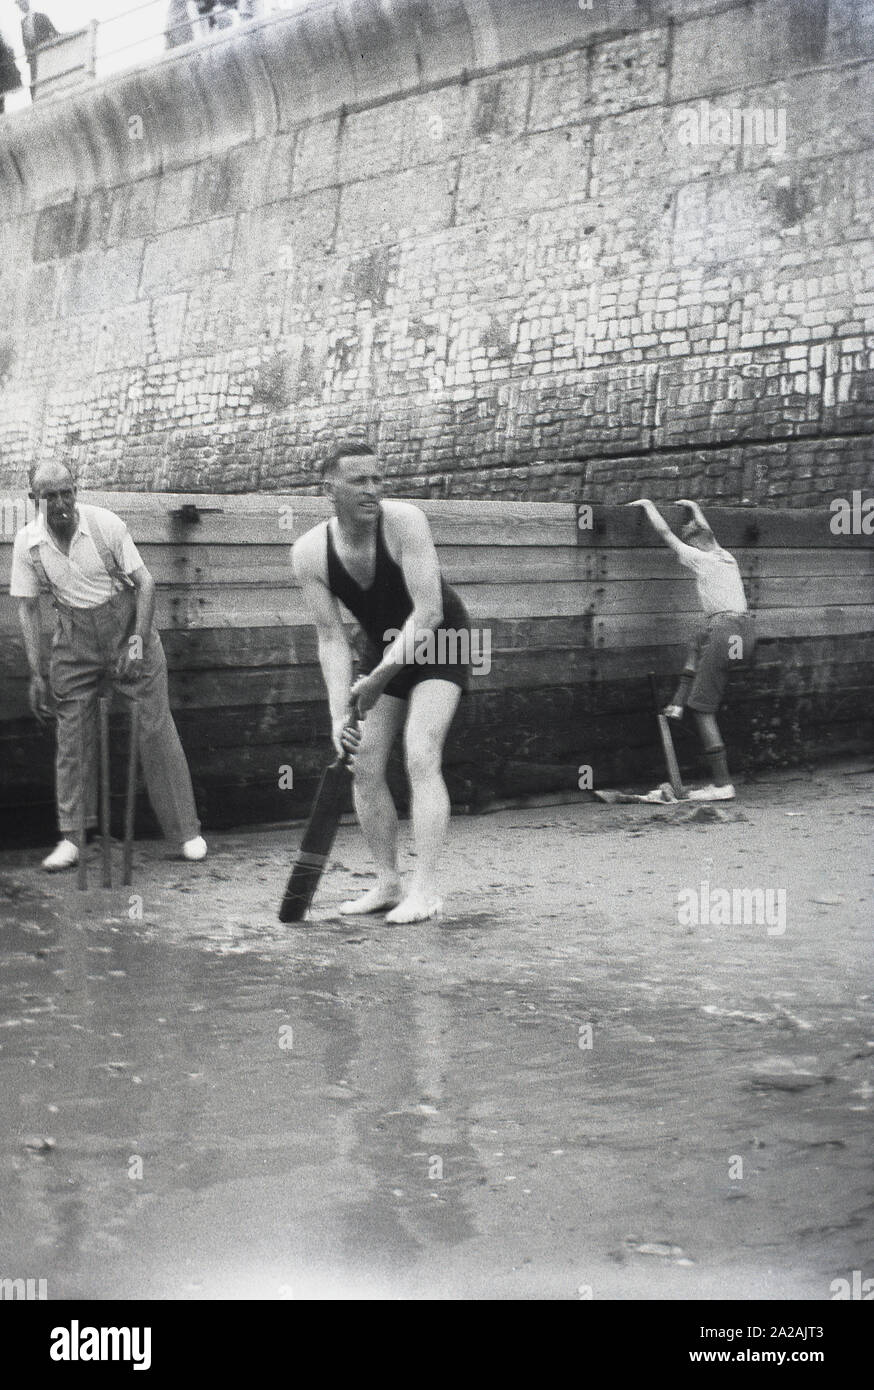 Années 1930, historique, hommes jouant au cricket sur une plage près d'un brise-mer et d'un mur géant de la plage, batteur dans son maillot de bain sans manches, Angleterre, Royaume-Uni. Banque D'Images